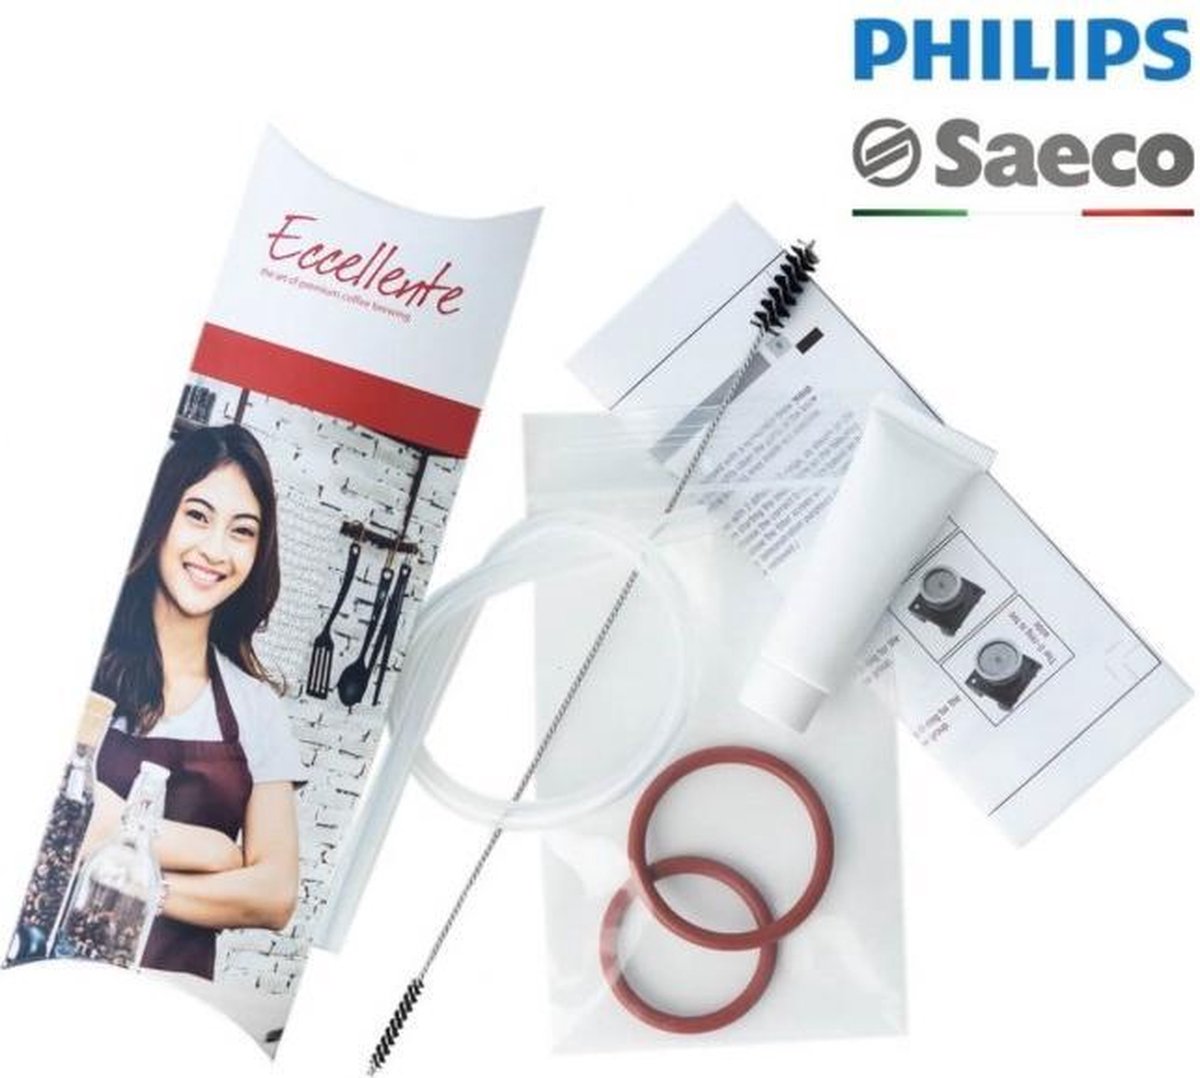 Clean & Care Set voor Philips Saeco koffiemachines || van Eccellente